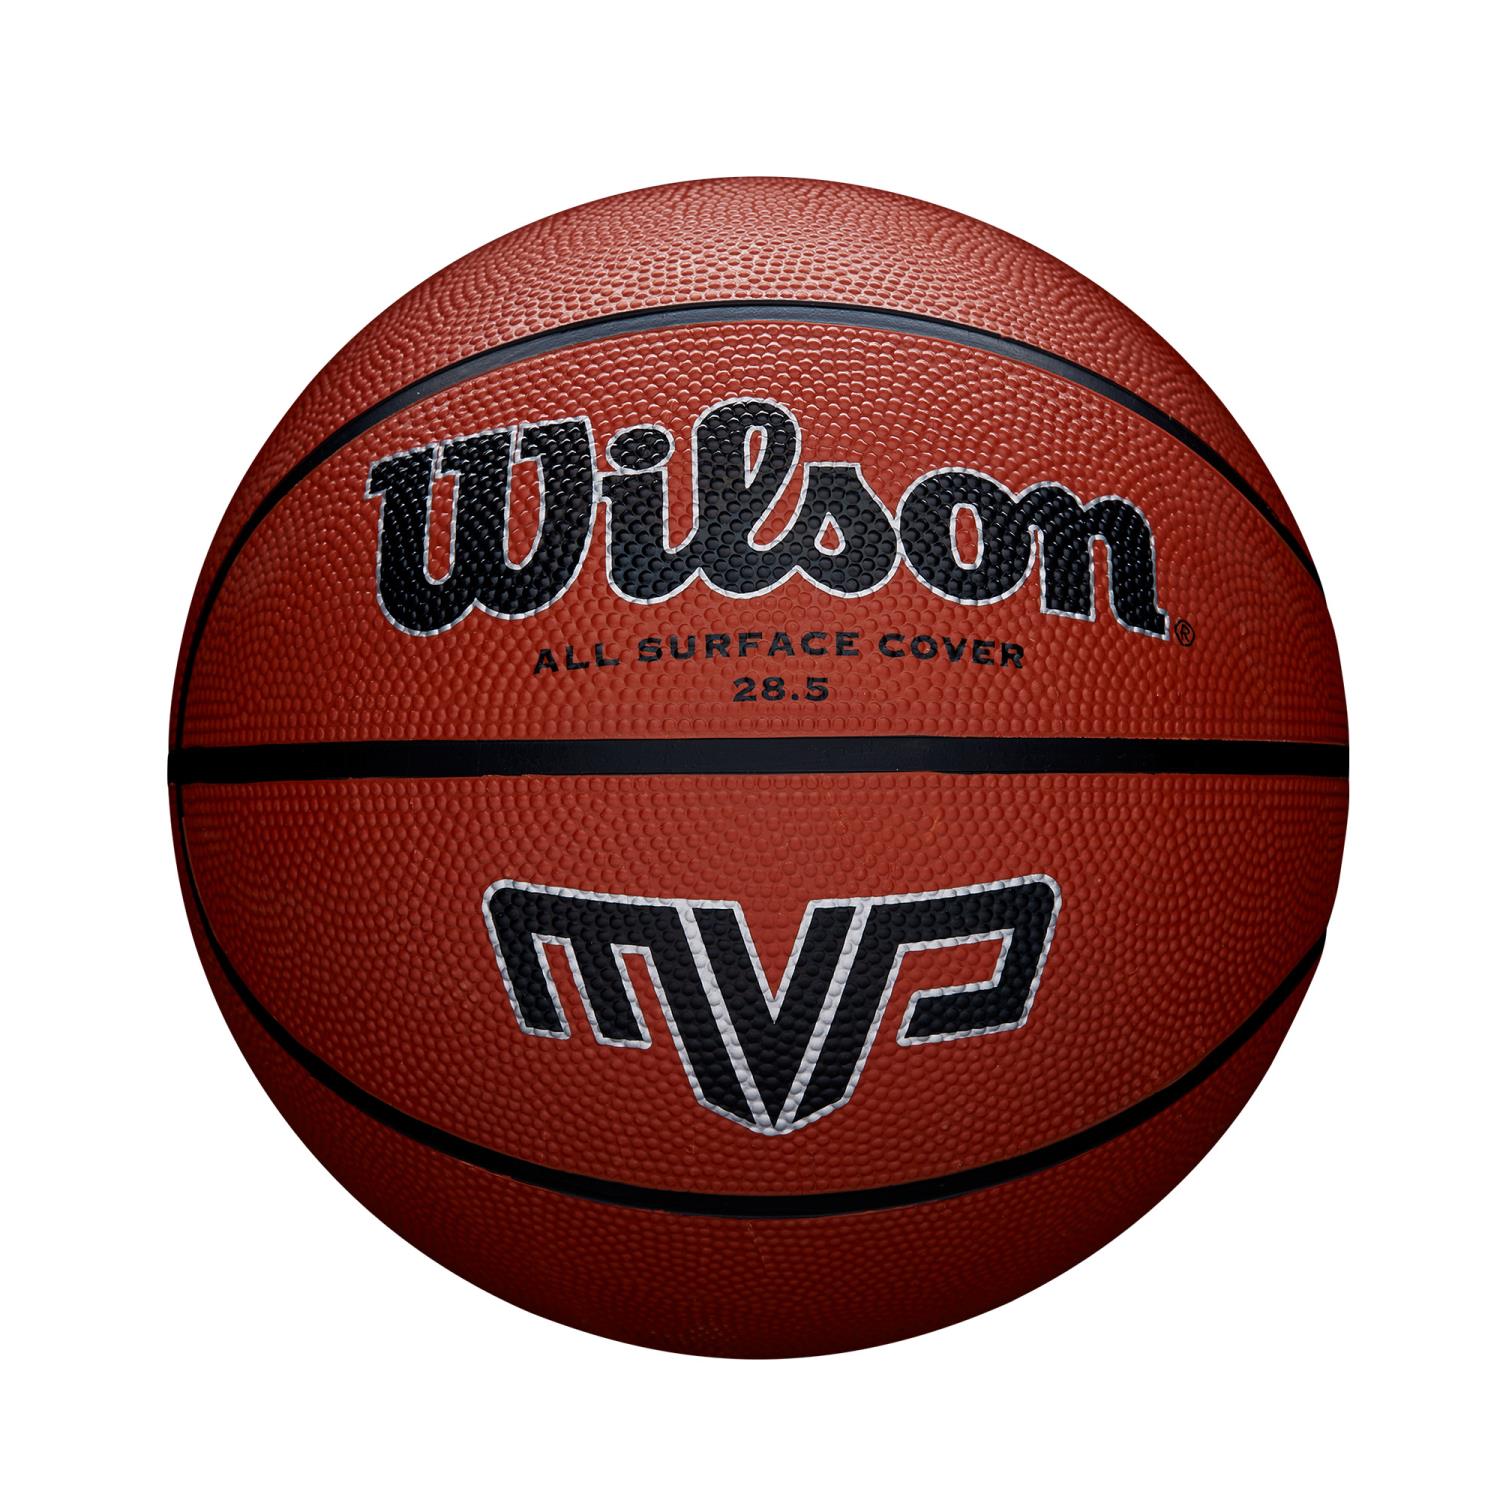 Wilson  MVP 285 BSKT